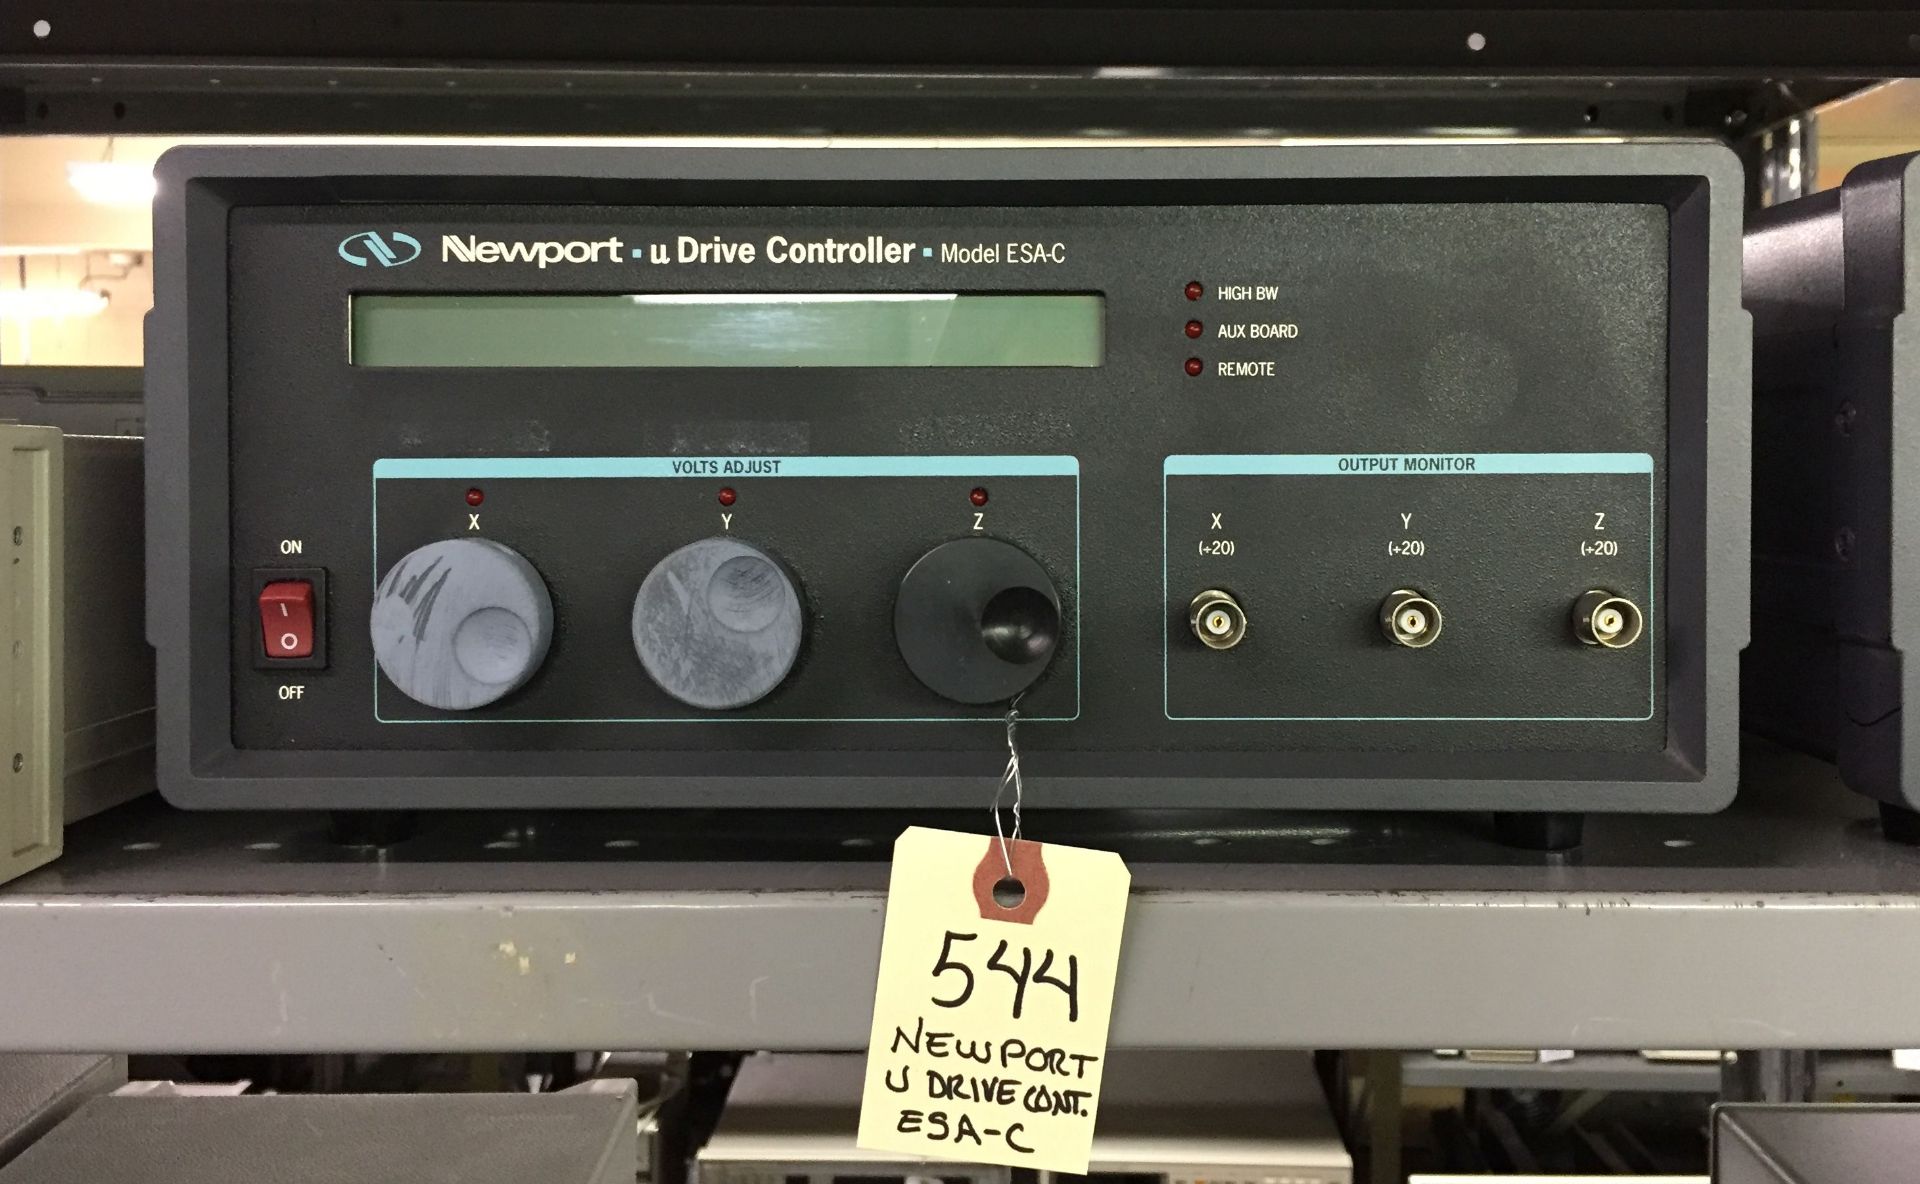 Newport ESA-C U Drive Controller